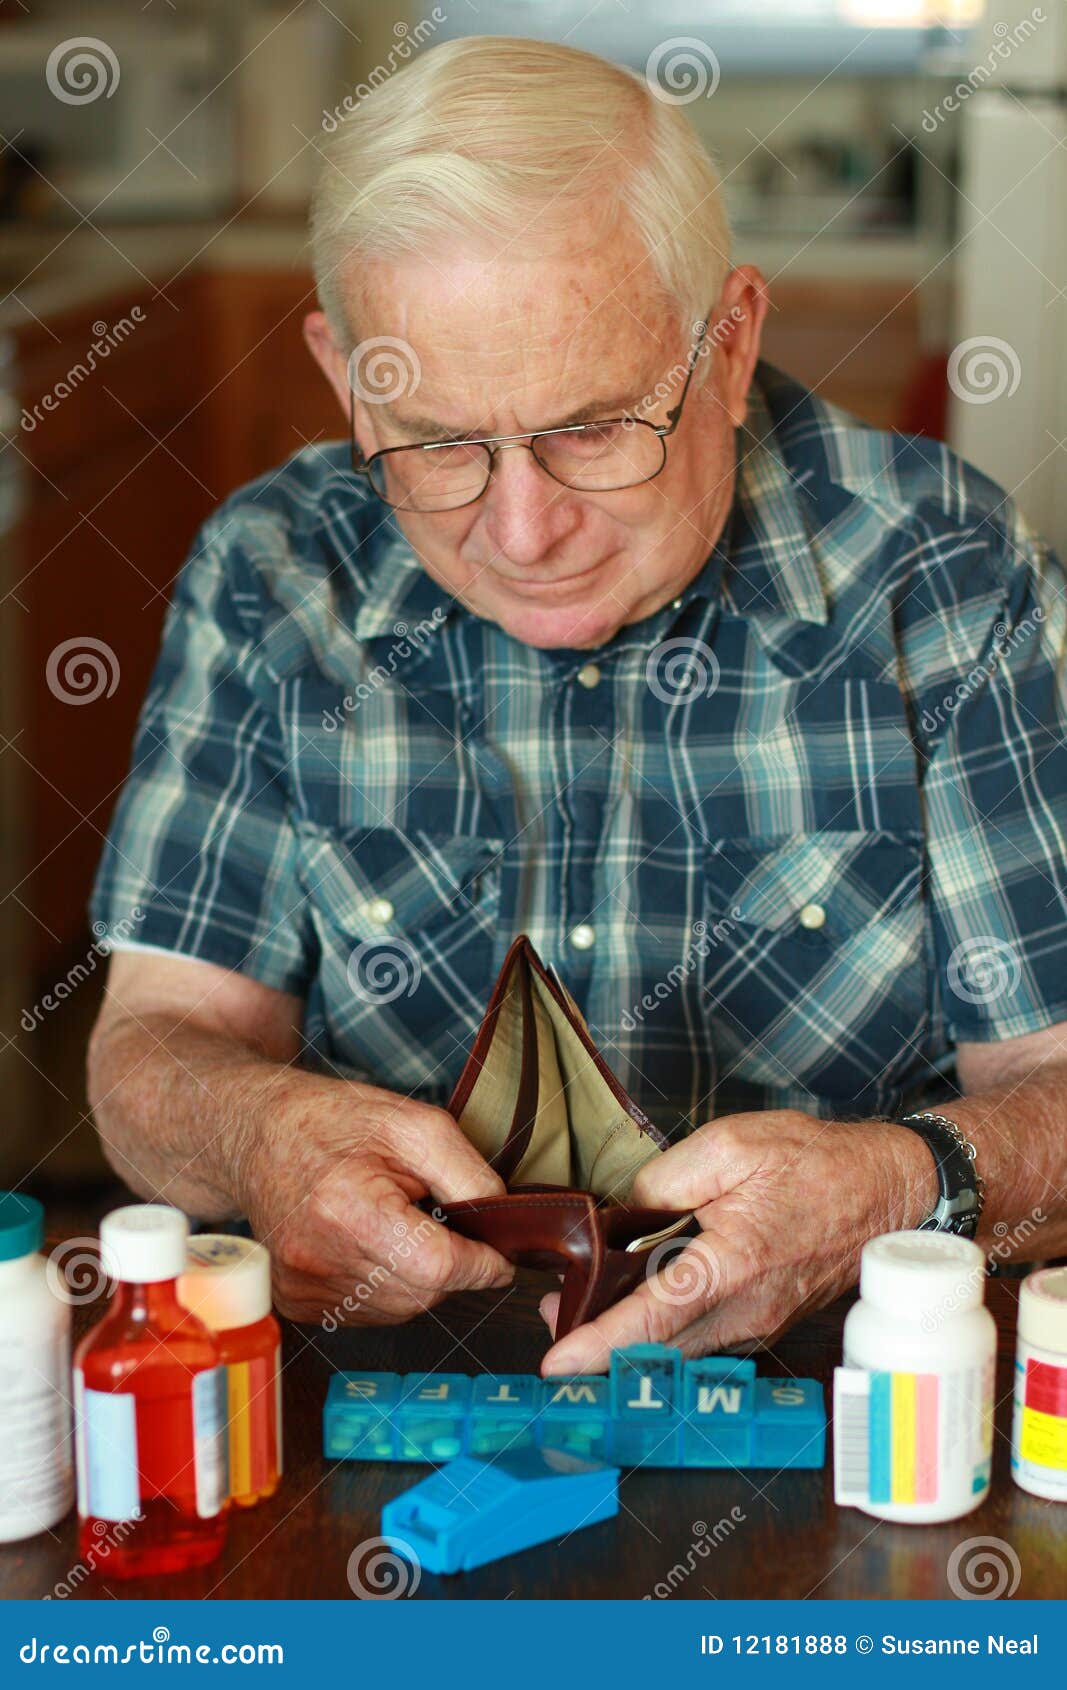 grandpa's empty wallet